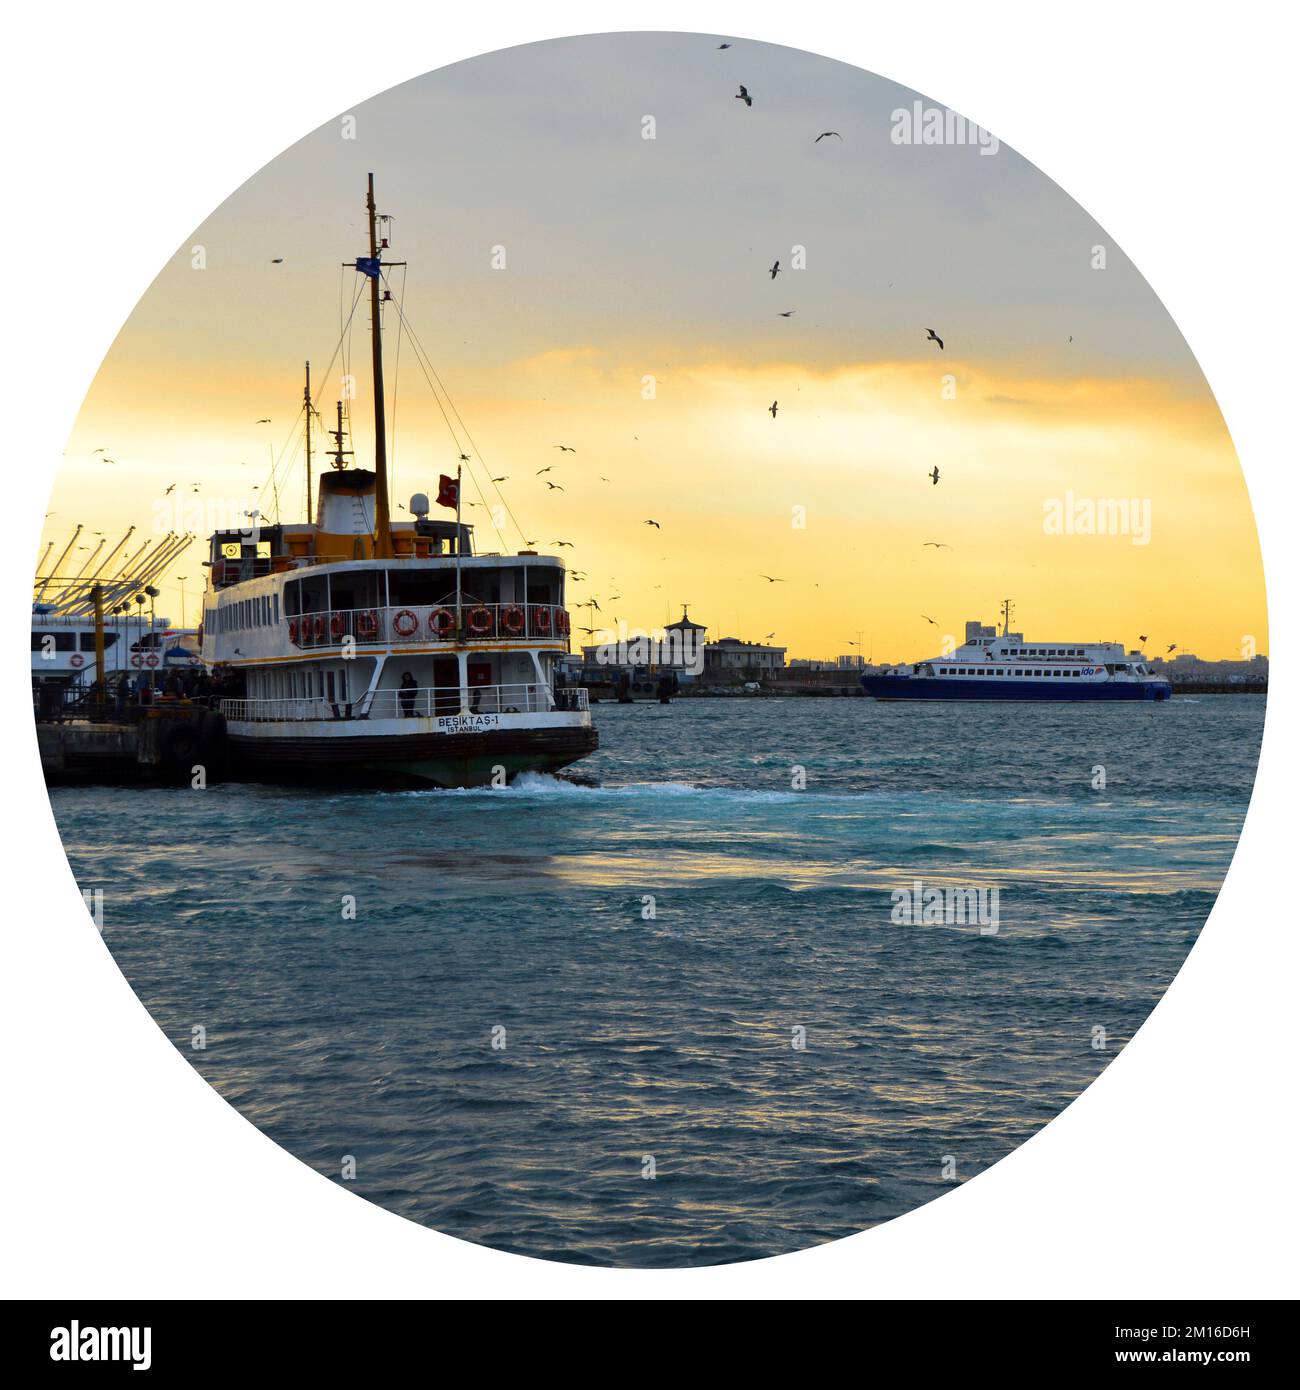 Weißes Kreuzfahrtschiff mit Fähre, Beförderung von Passagieren, Symbol von istanbul, März 23 2019 Kadikoy Istanbul Türkei Stockfoto